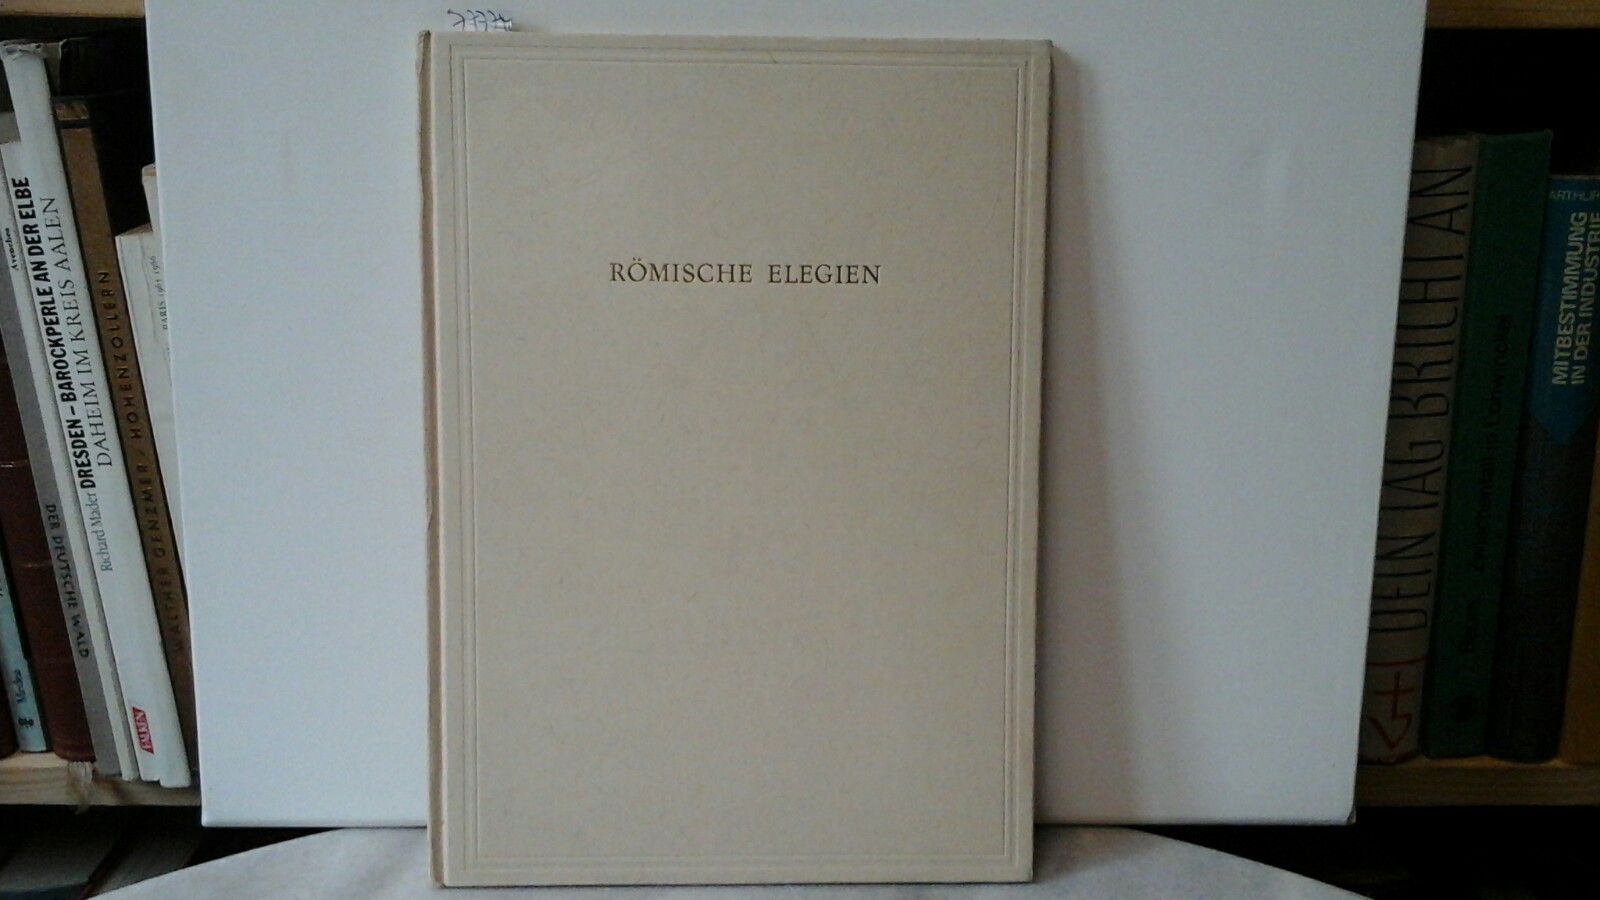 GOETHE, JOHANN WOLFGANG VON: Rmische Elegien. Mit Originallithographien von A.H.Pellegrini. Erste /1./ Auflage dieser Ausgabe.